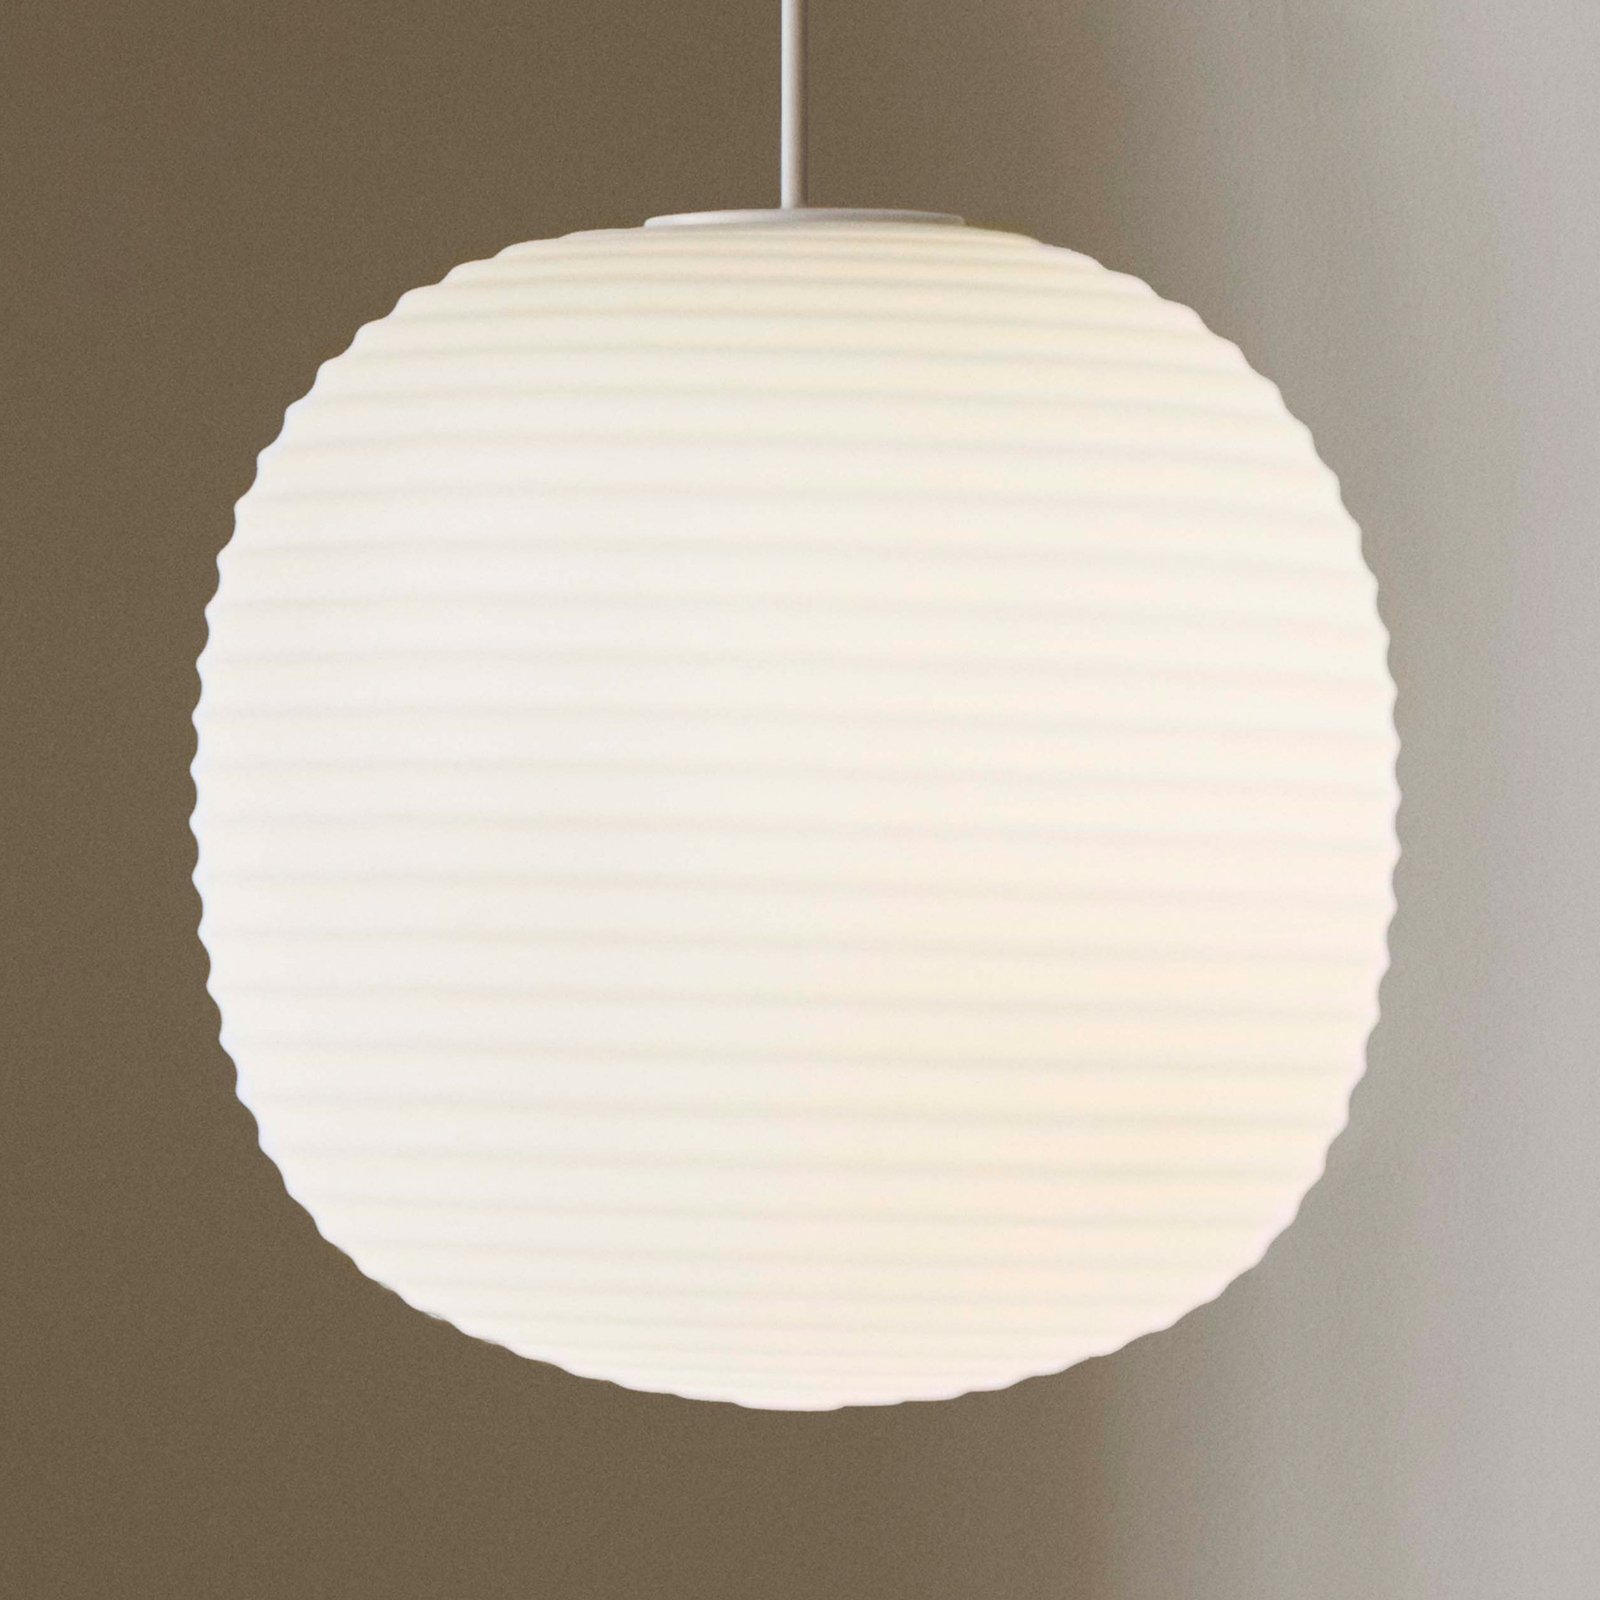 New Works Lantern Medium závěsné světlo, Ø 30cm